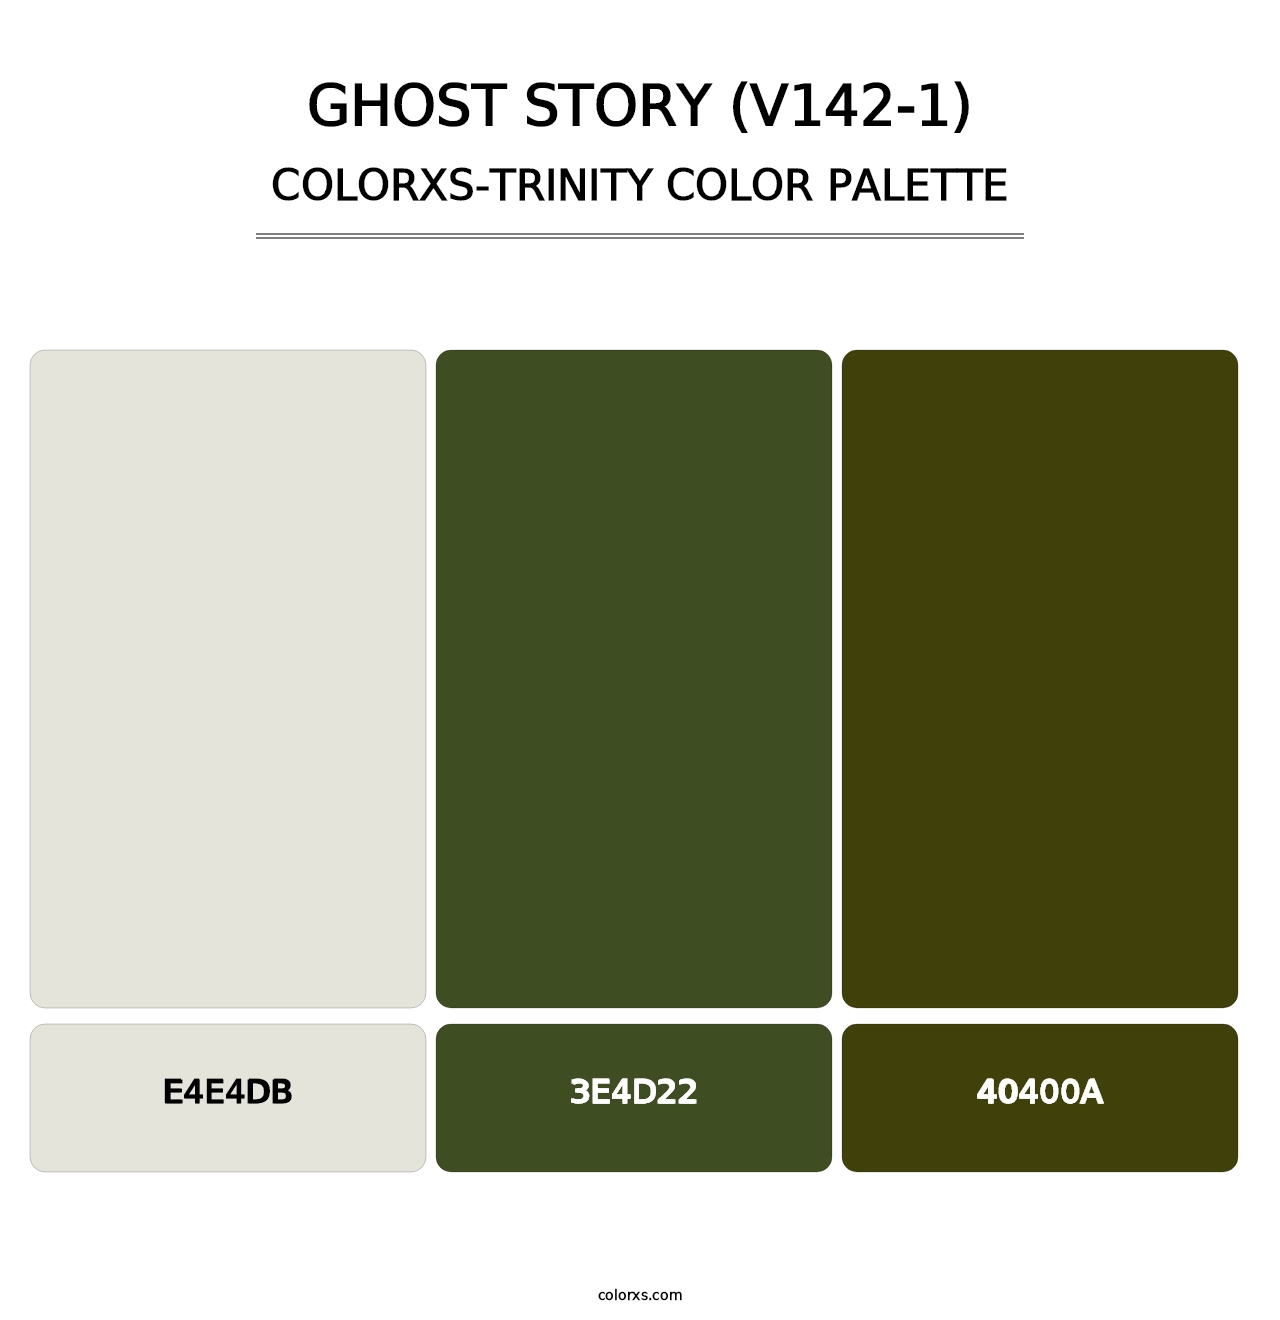 Ghost Story (V142-1) - Colorxs Trinity Palette